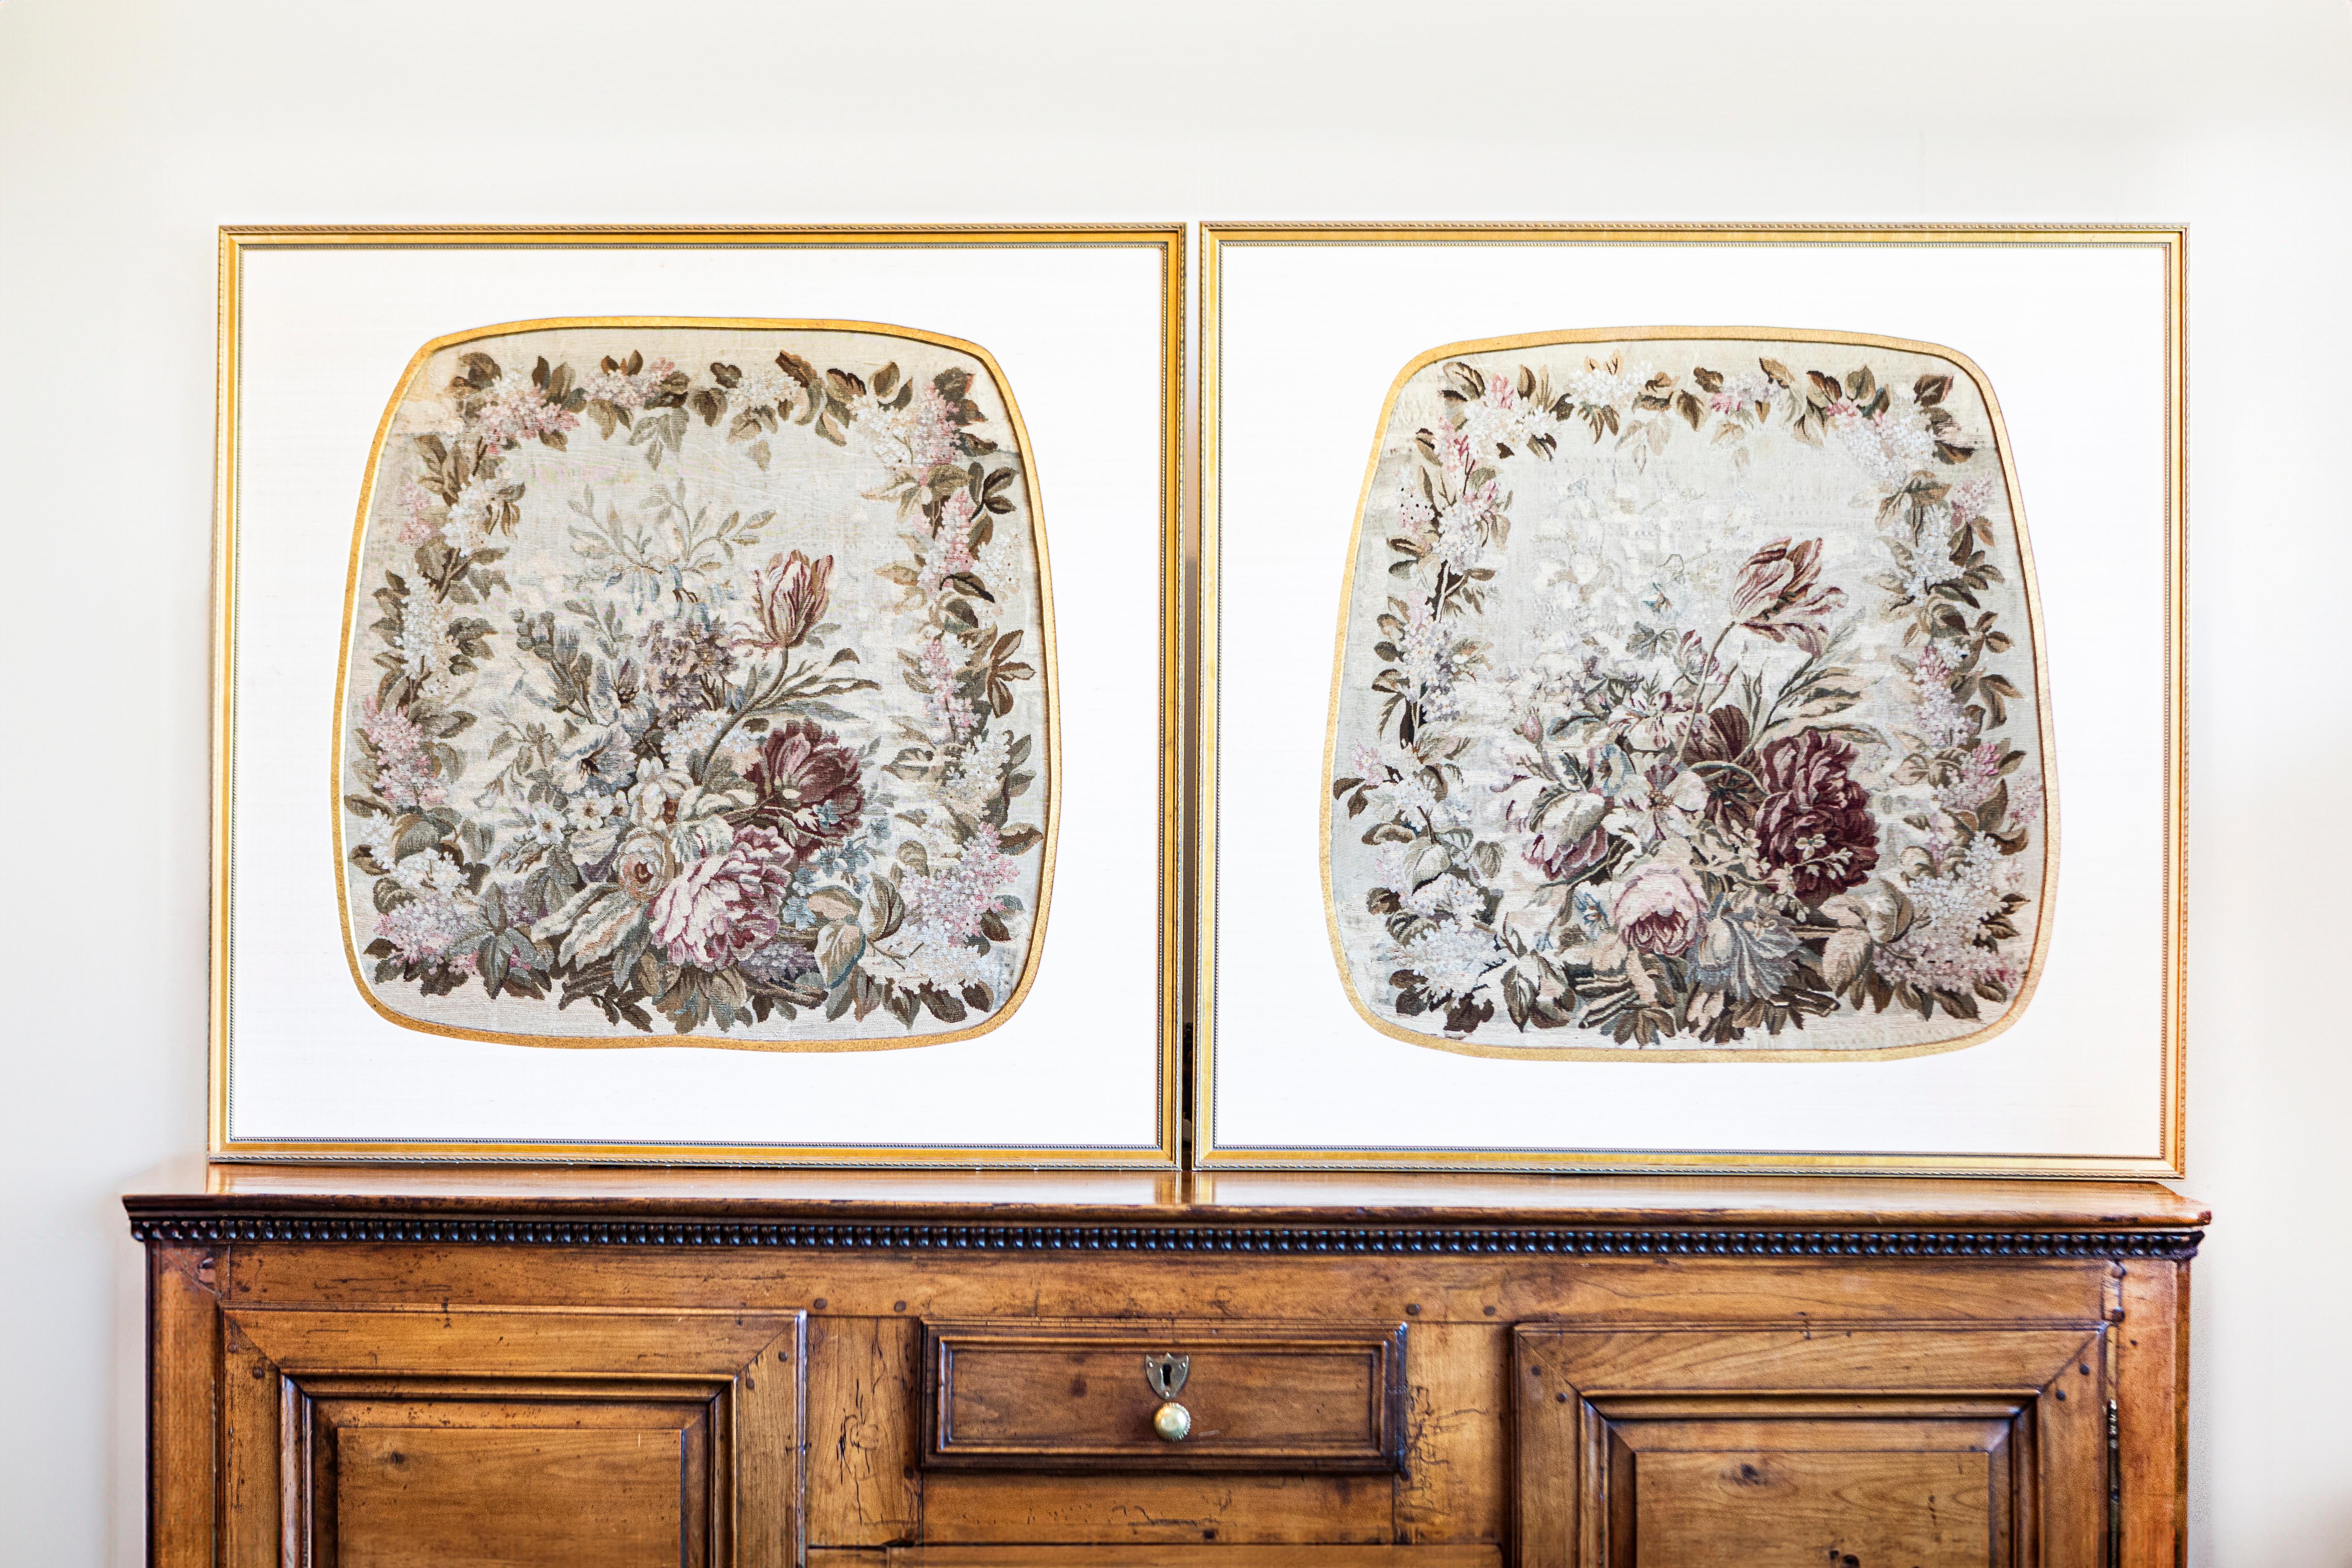 Drei französische Aubusson-Seidentapisserien aus dem 19. Jahrhundert in geschnitzten Goldholzrahmen, die einzeln verkauft werden. Jeder dieser drei hübschen gerahmten Seidenteppiche, die in der berühmten Aubusson-Manufaktur in Zentralfrankreich im